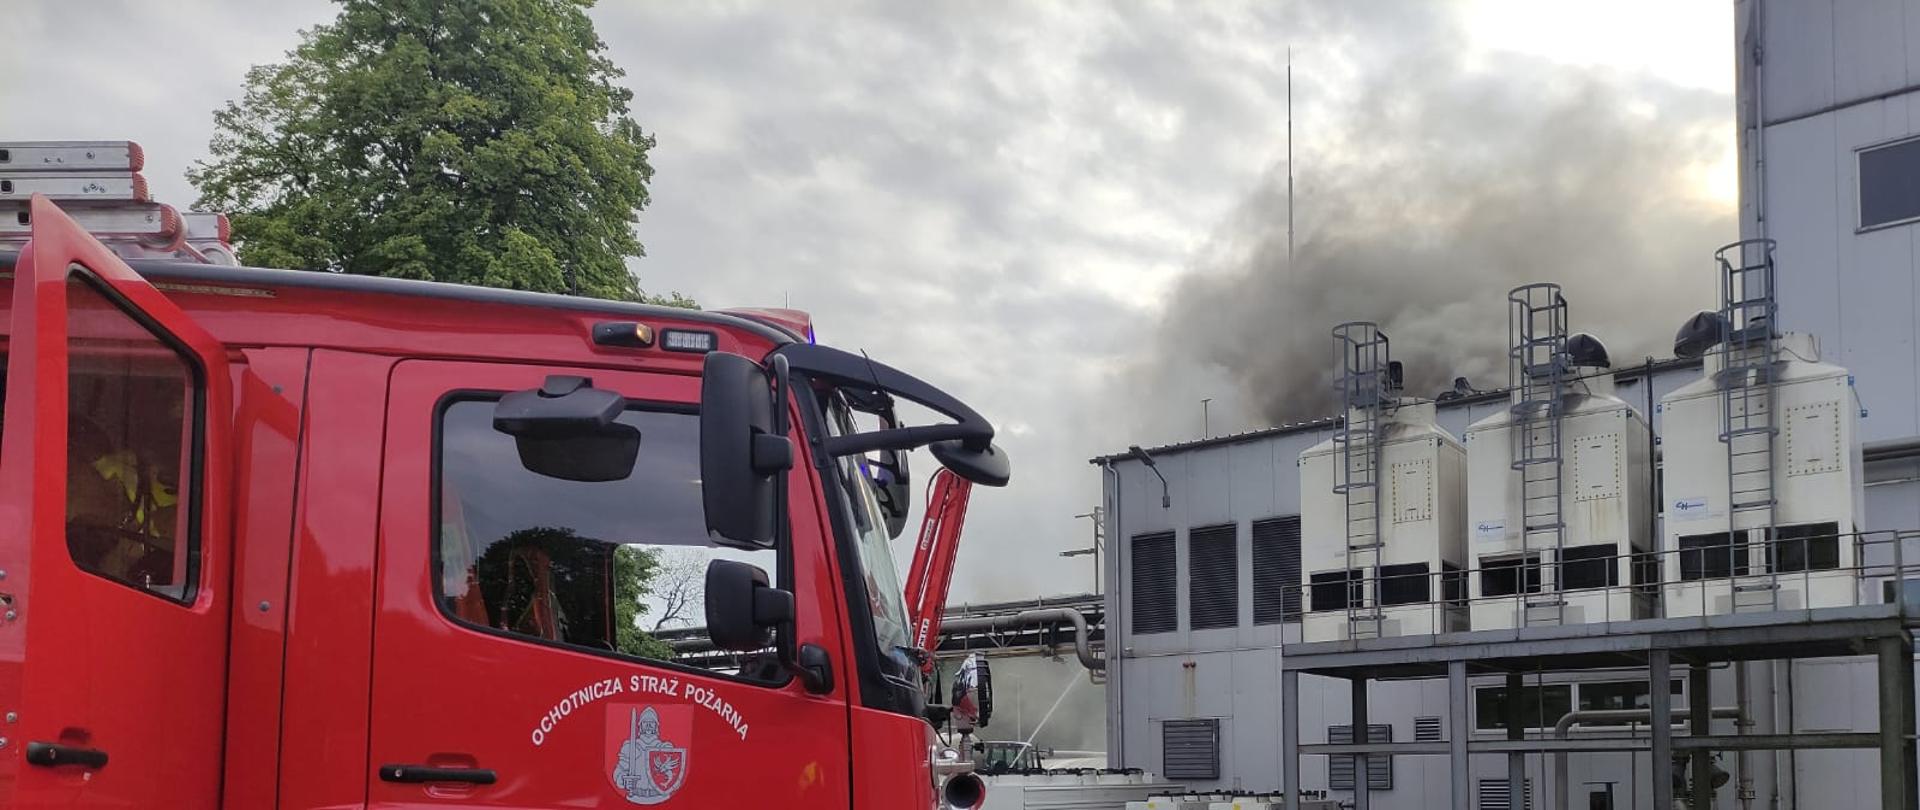 Na zdjęciu po lewej stronie widać samochód pożarniczy, po prawej w oddali widać budynek produkcyjny z którego z dachu wydobywa się dym.